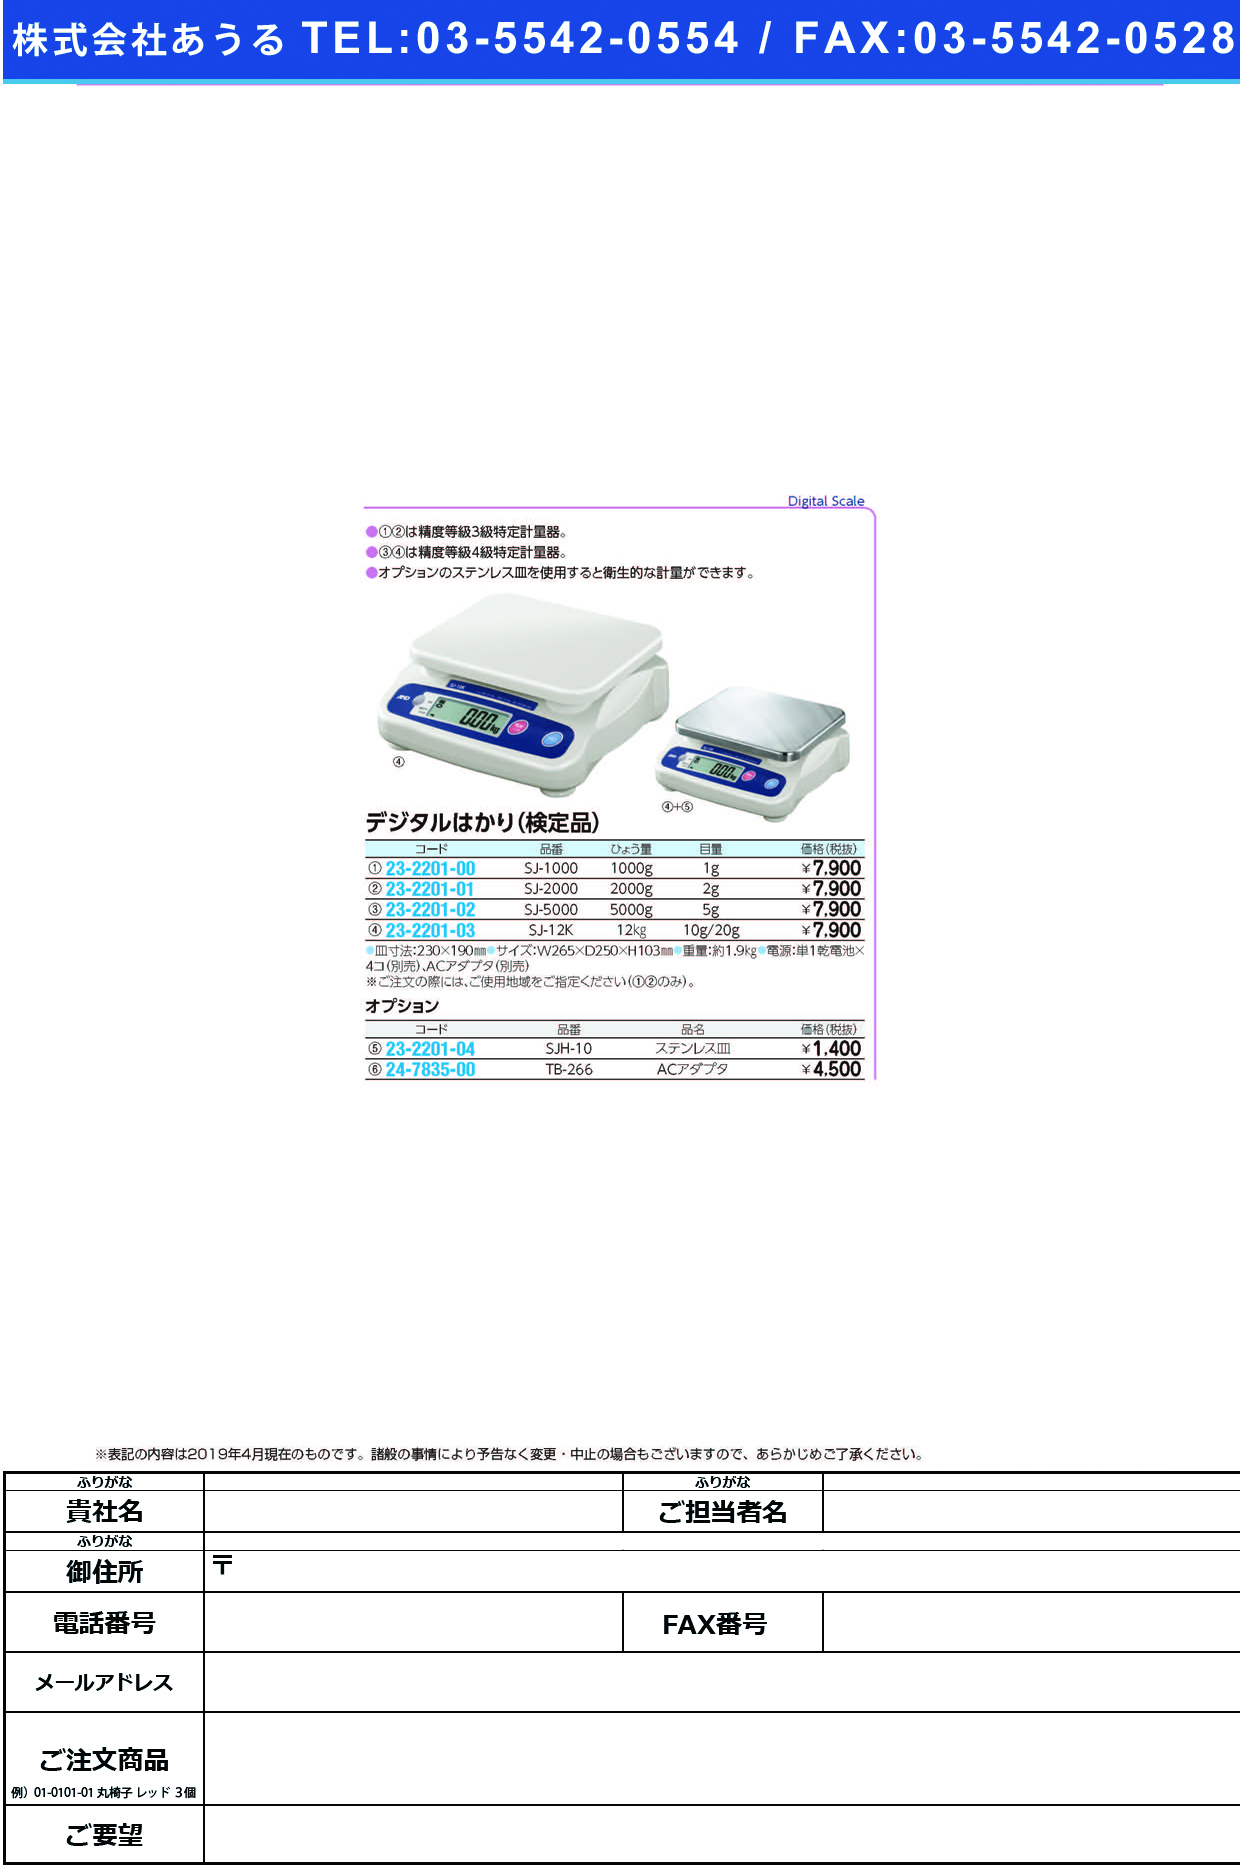 (23-2201-01)デジタルはかり（検定品） SJ-2000 ﾃﾞｼﾞﾀﾙﾊｶﾘ(ｹﾝﾃｲﾋﾝ)【1台単位】【2019年カタログ商品】